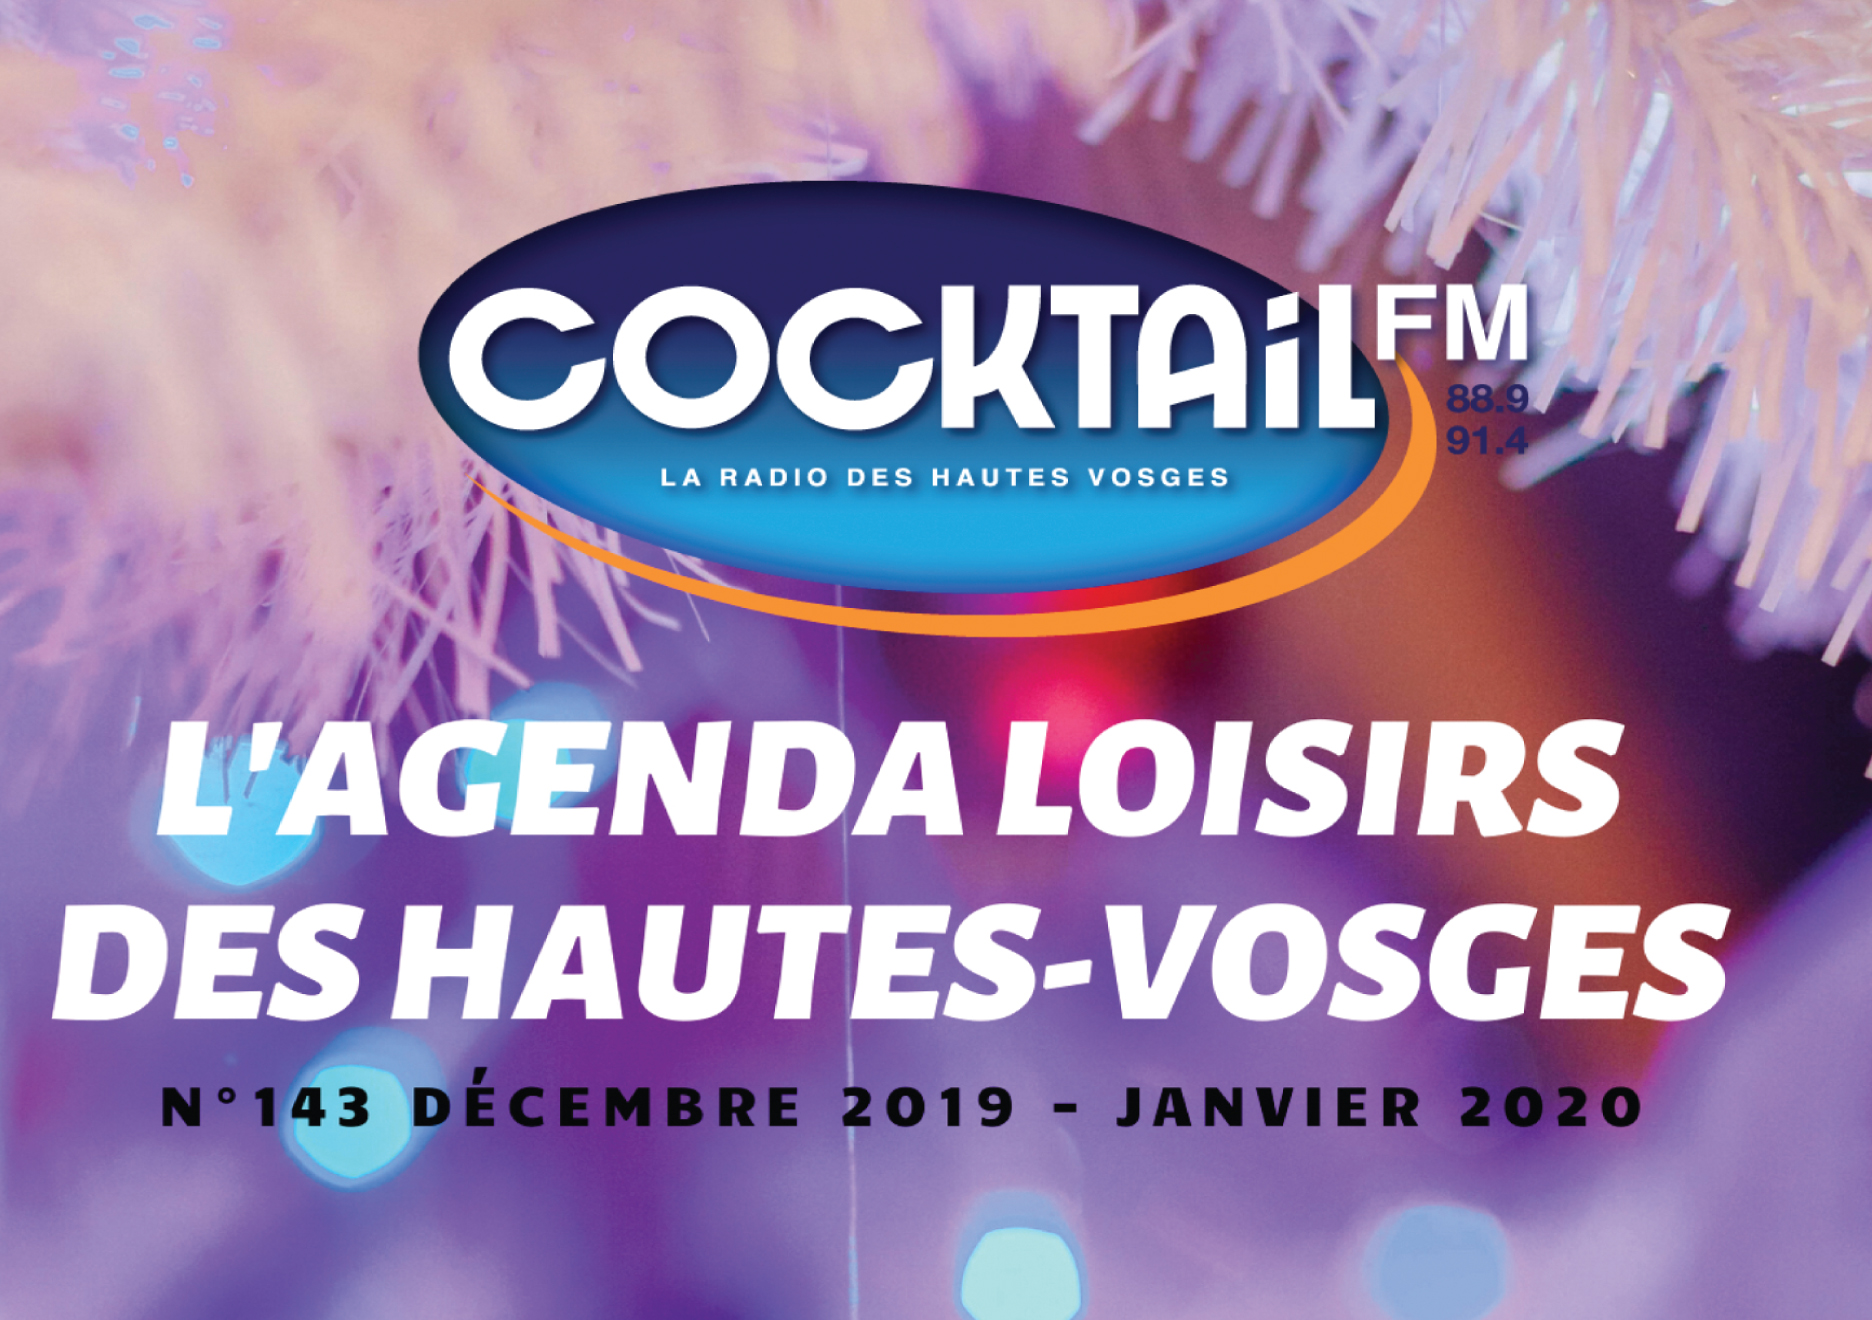 AGENDA LOISIRS COCKTAIL FM décembre 2019 - janvier 2020